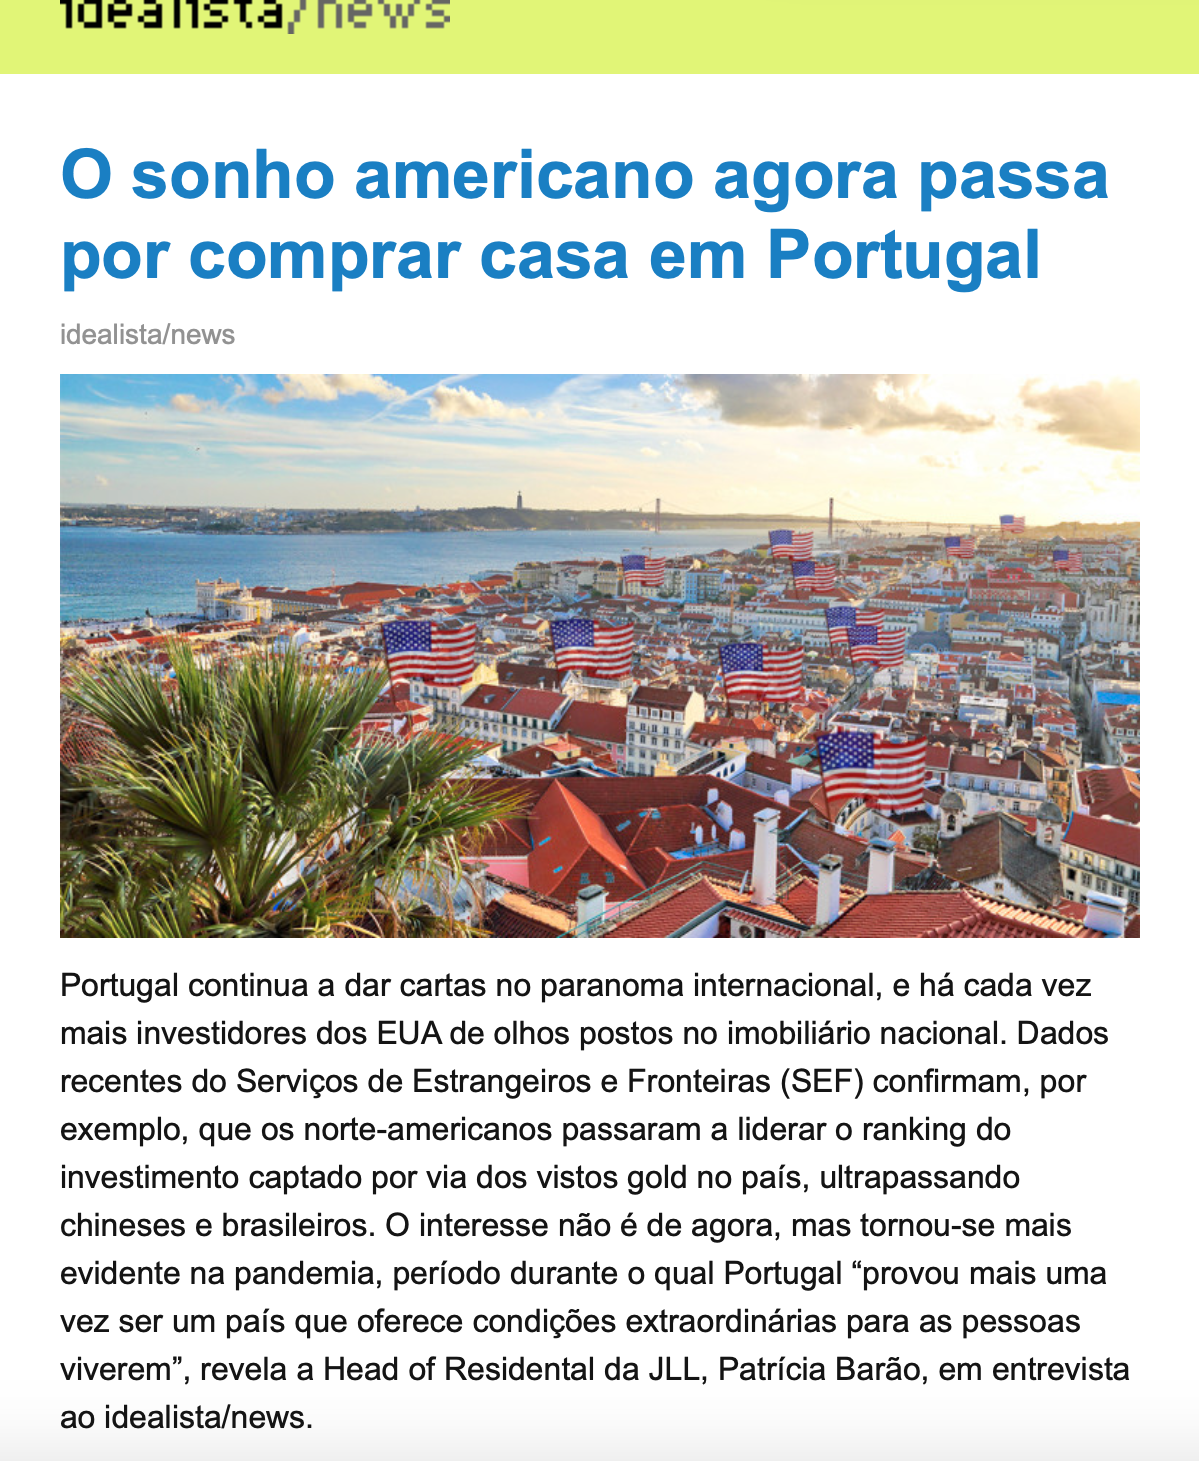 Tempo de venda de uma casa em Portugal — idealista/news